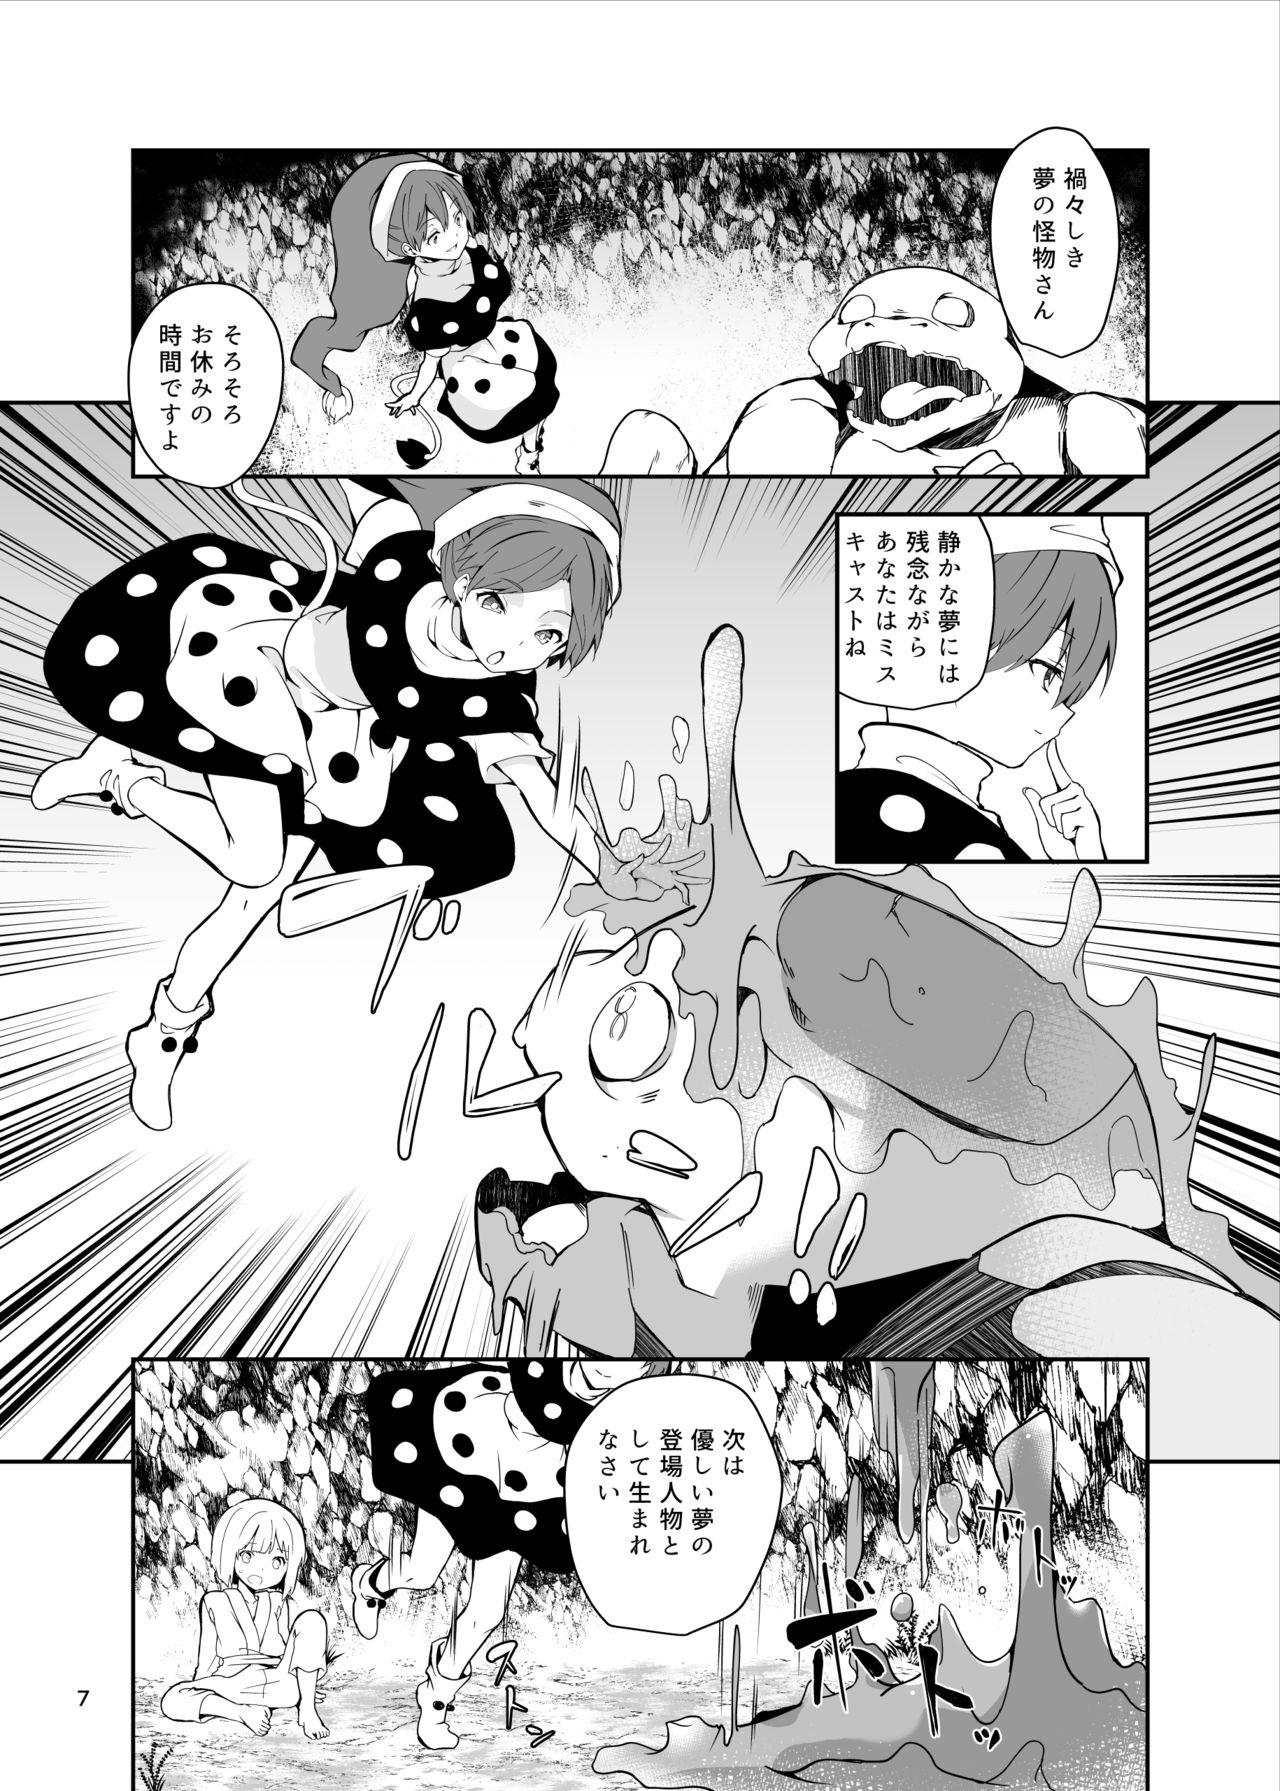 Strange Doremy-san to Boku no Tousou Yume - Touhou project Breeding - Page 7